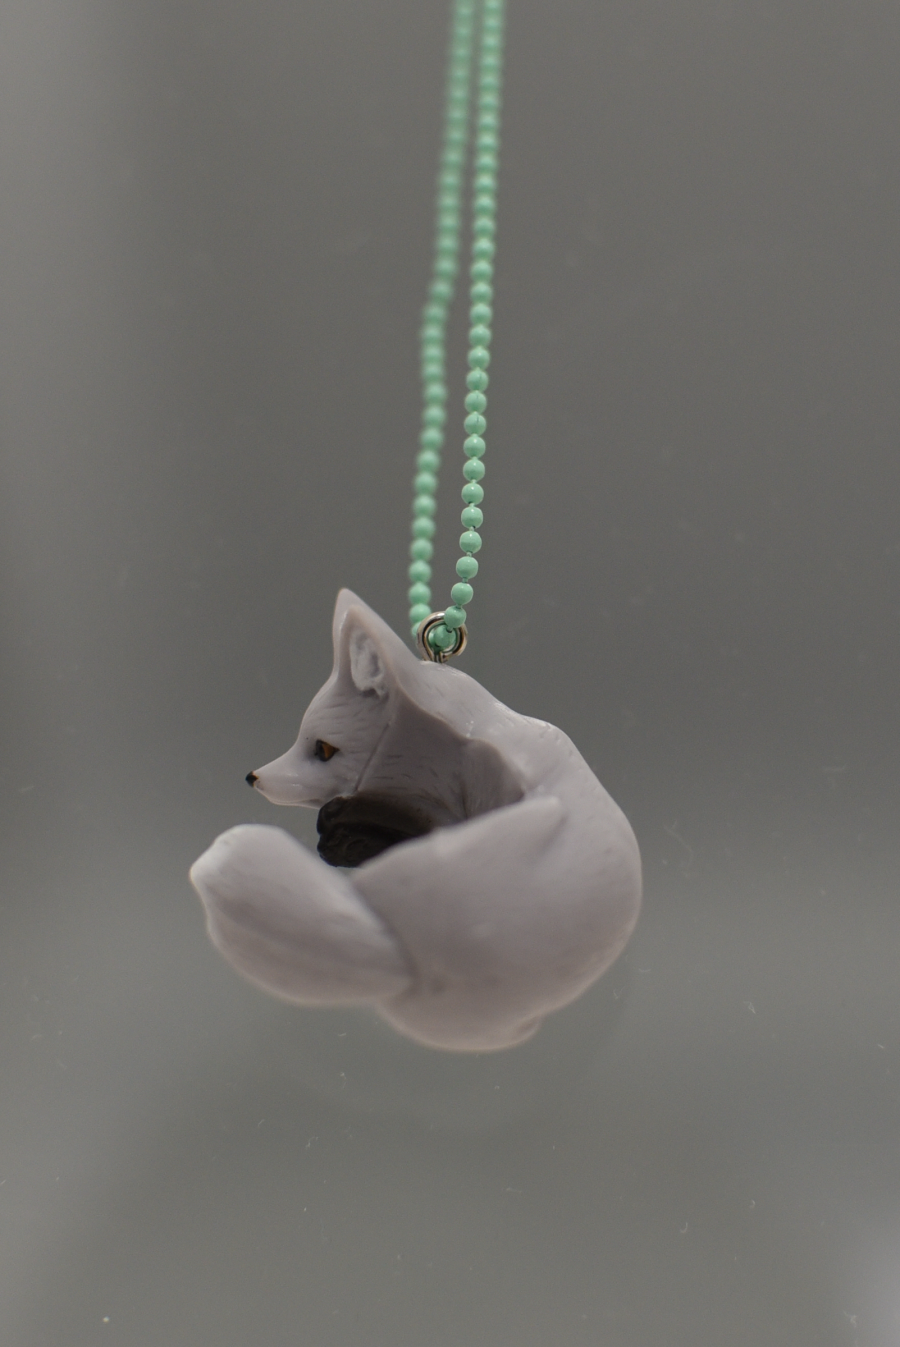 Grey fox necklace (small) POP13